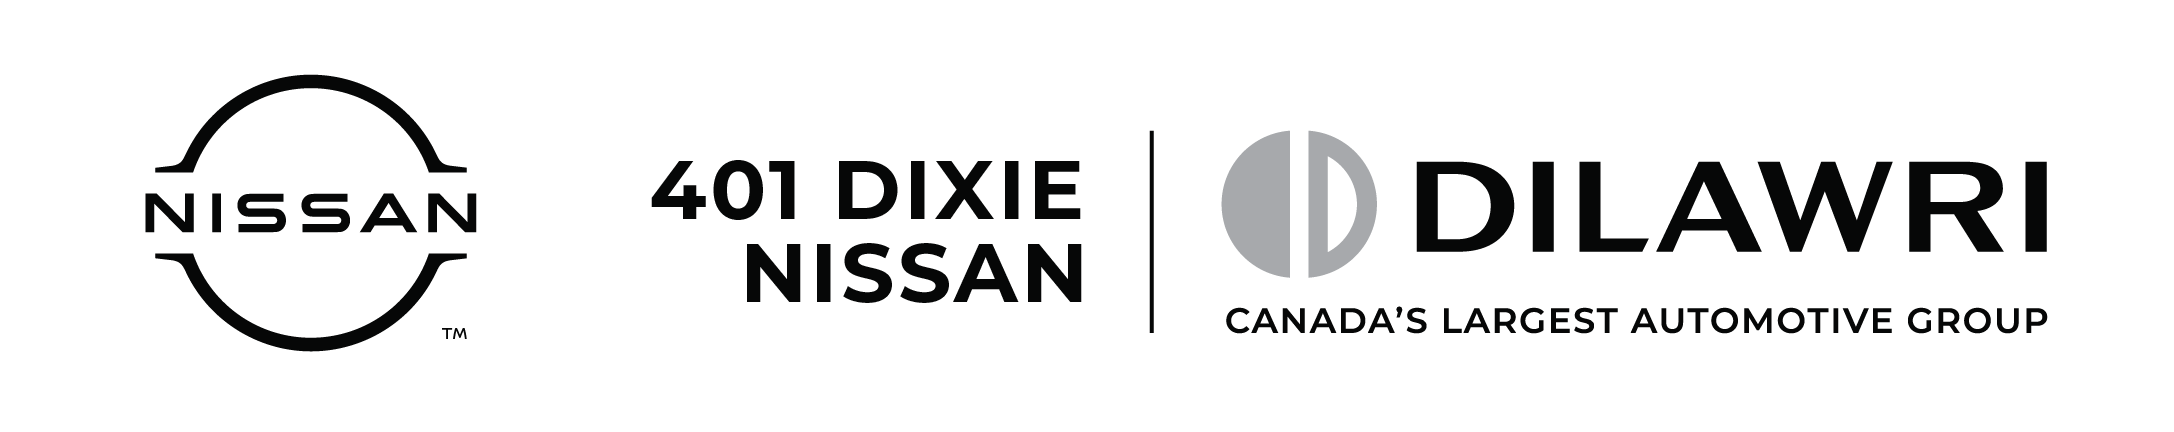 401 Dixie Nissan Logo